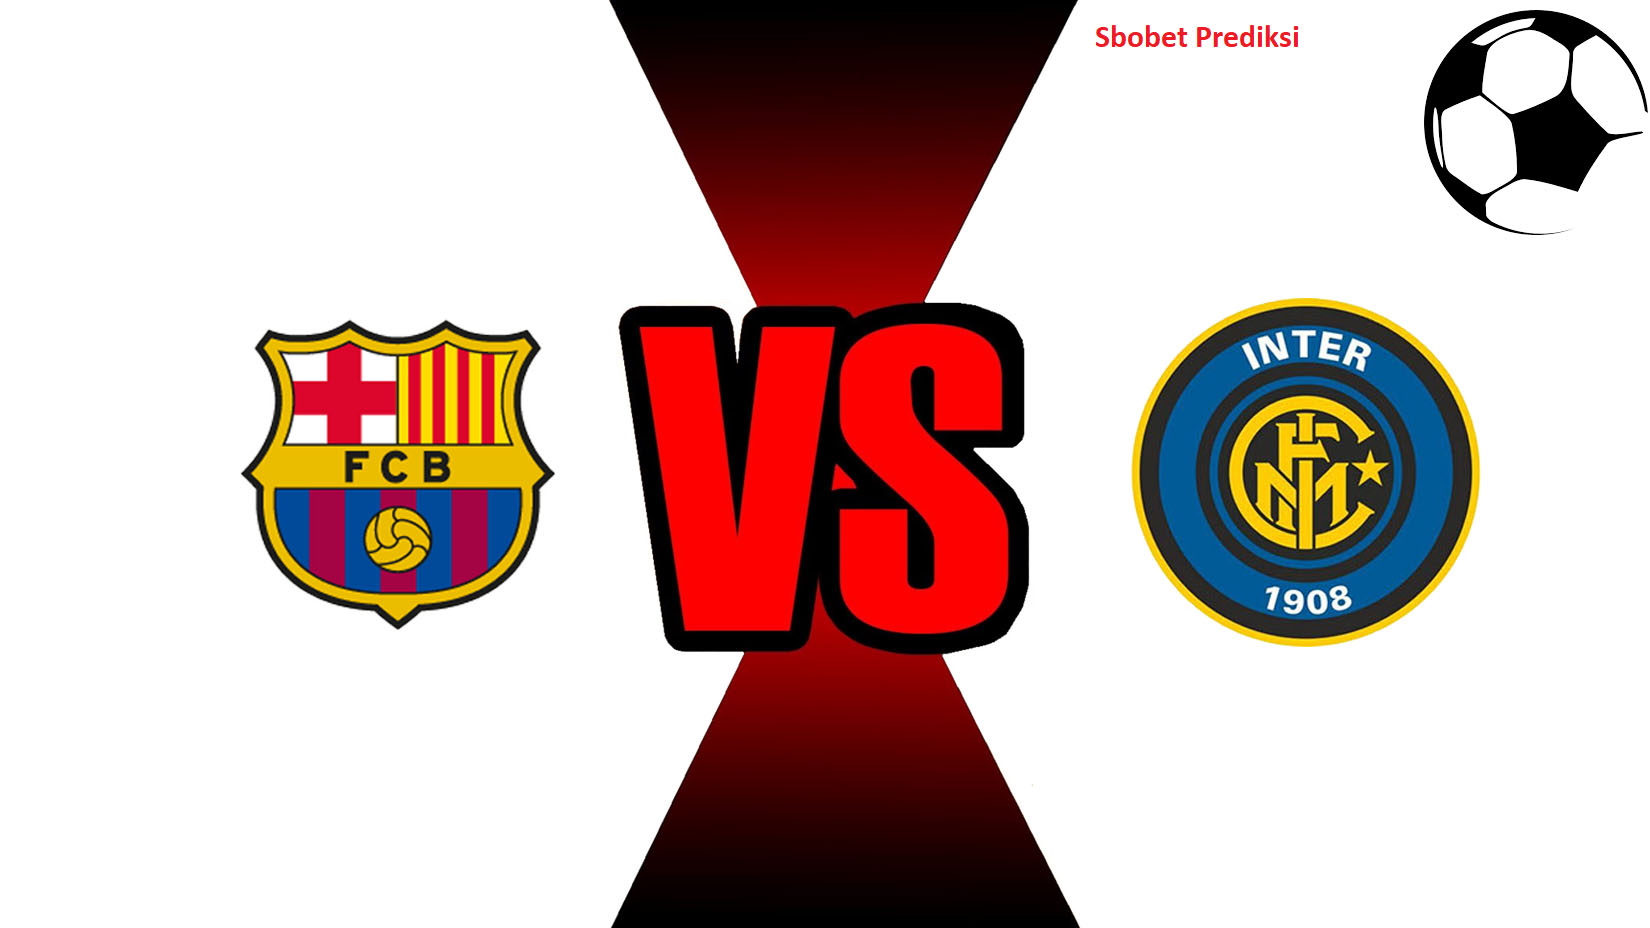 Prediksi Skor Bola Online Barcelona vs Inter Milan 25 Oktober 2018